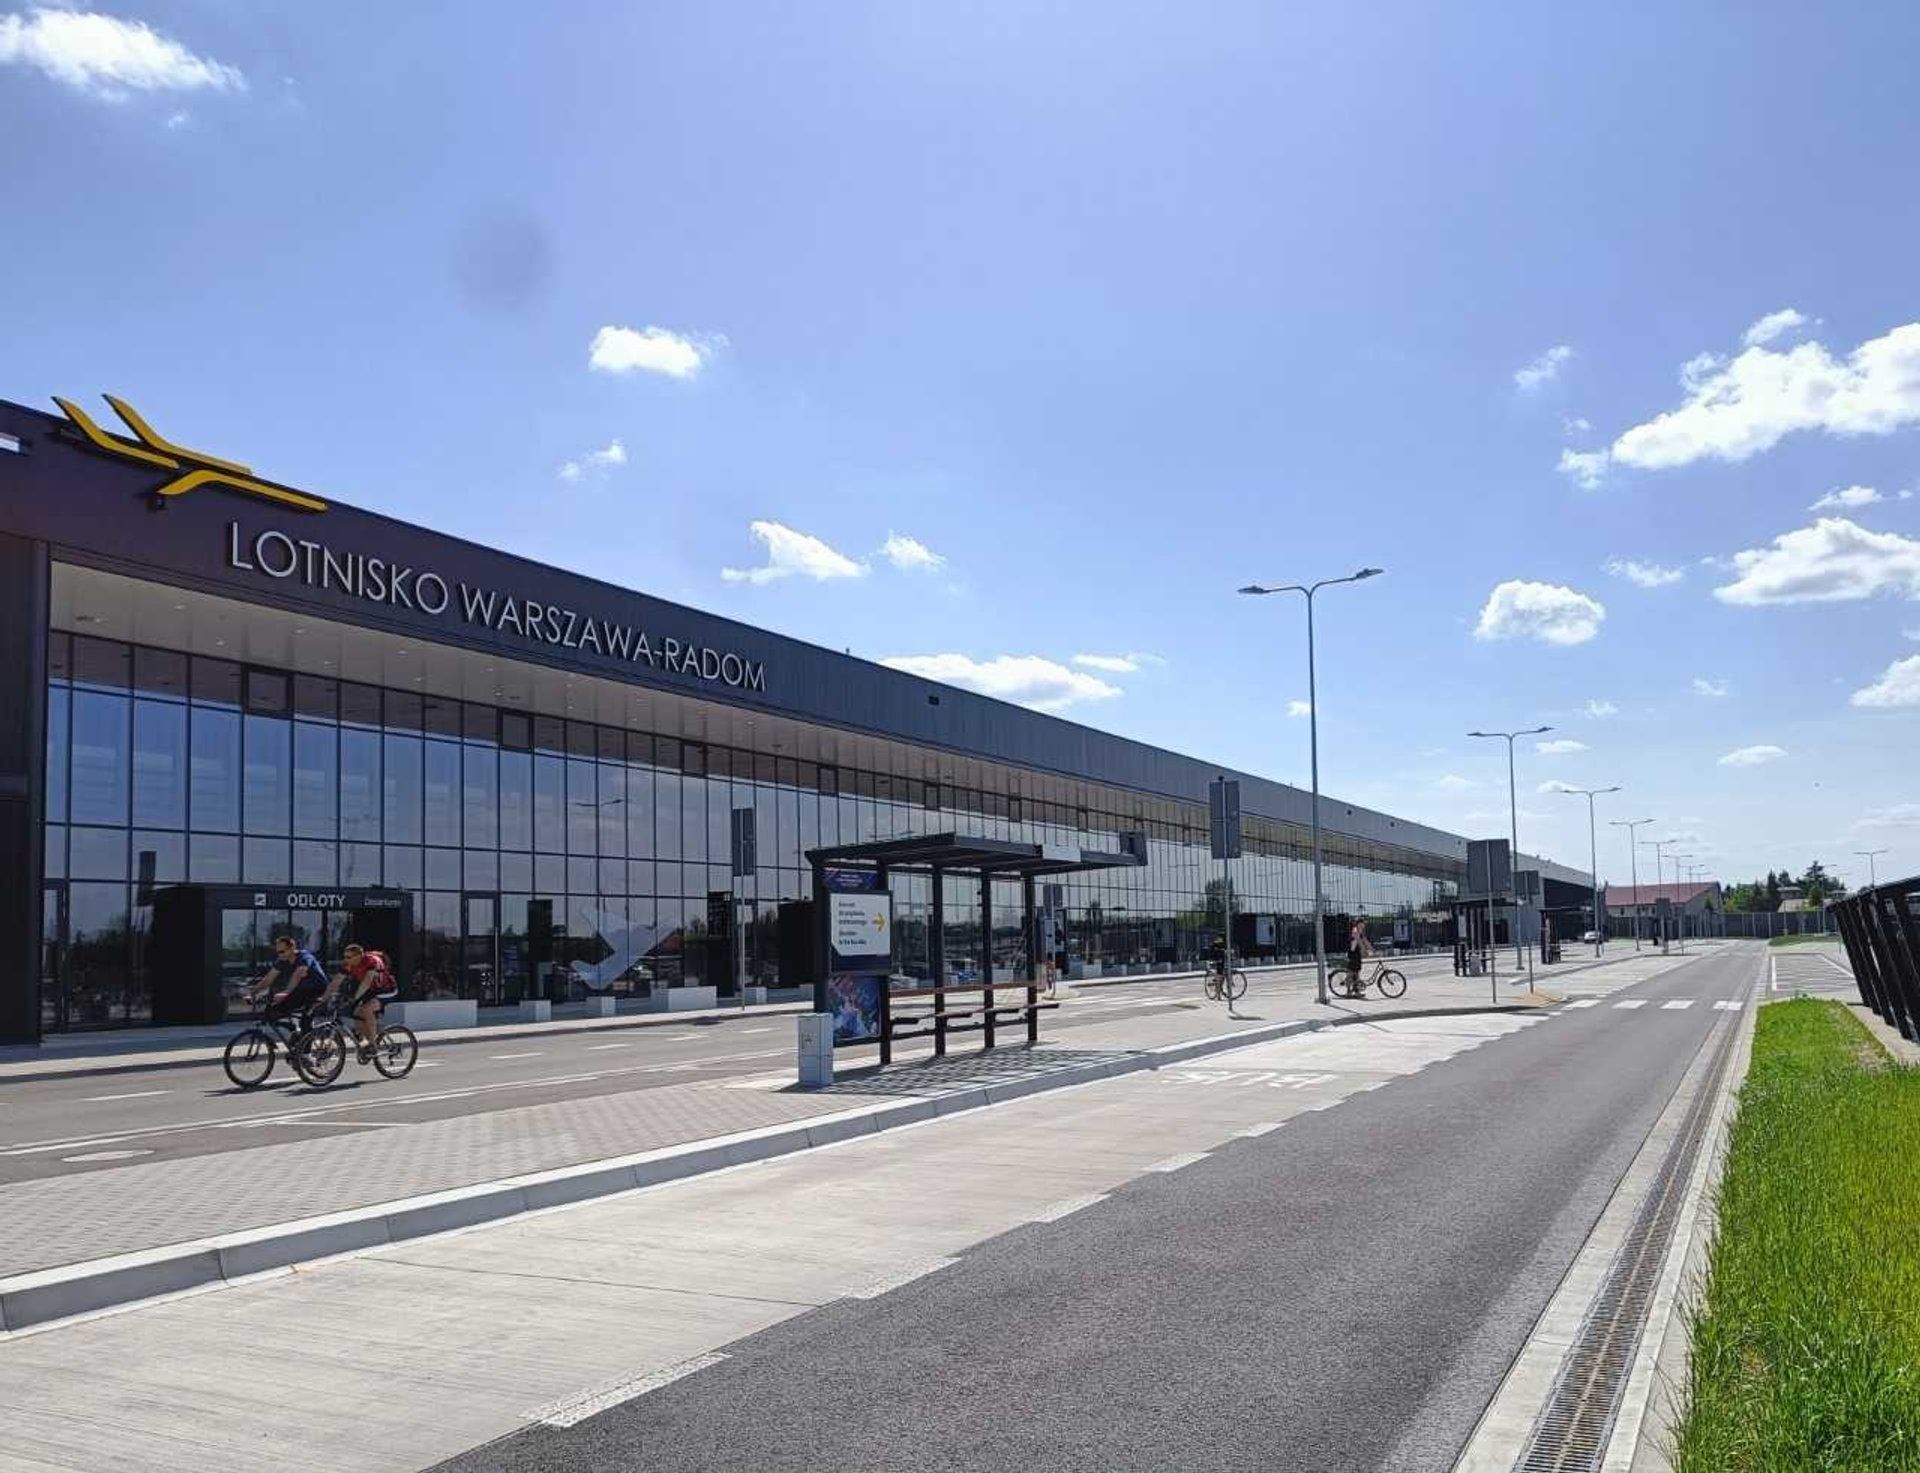 Lotnisko Warszawa-Radom